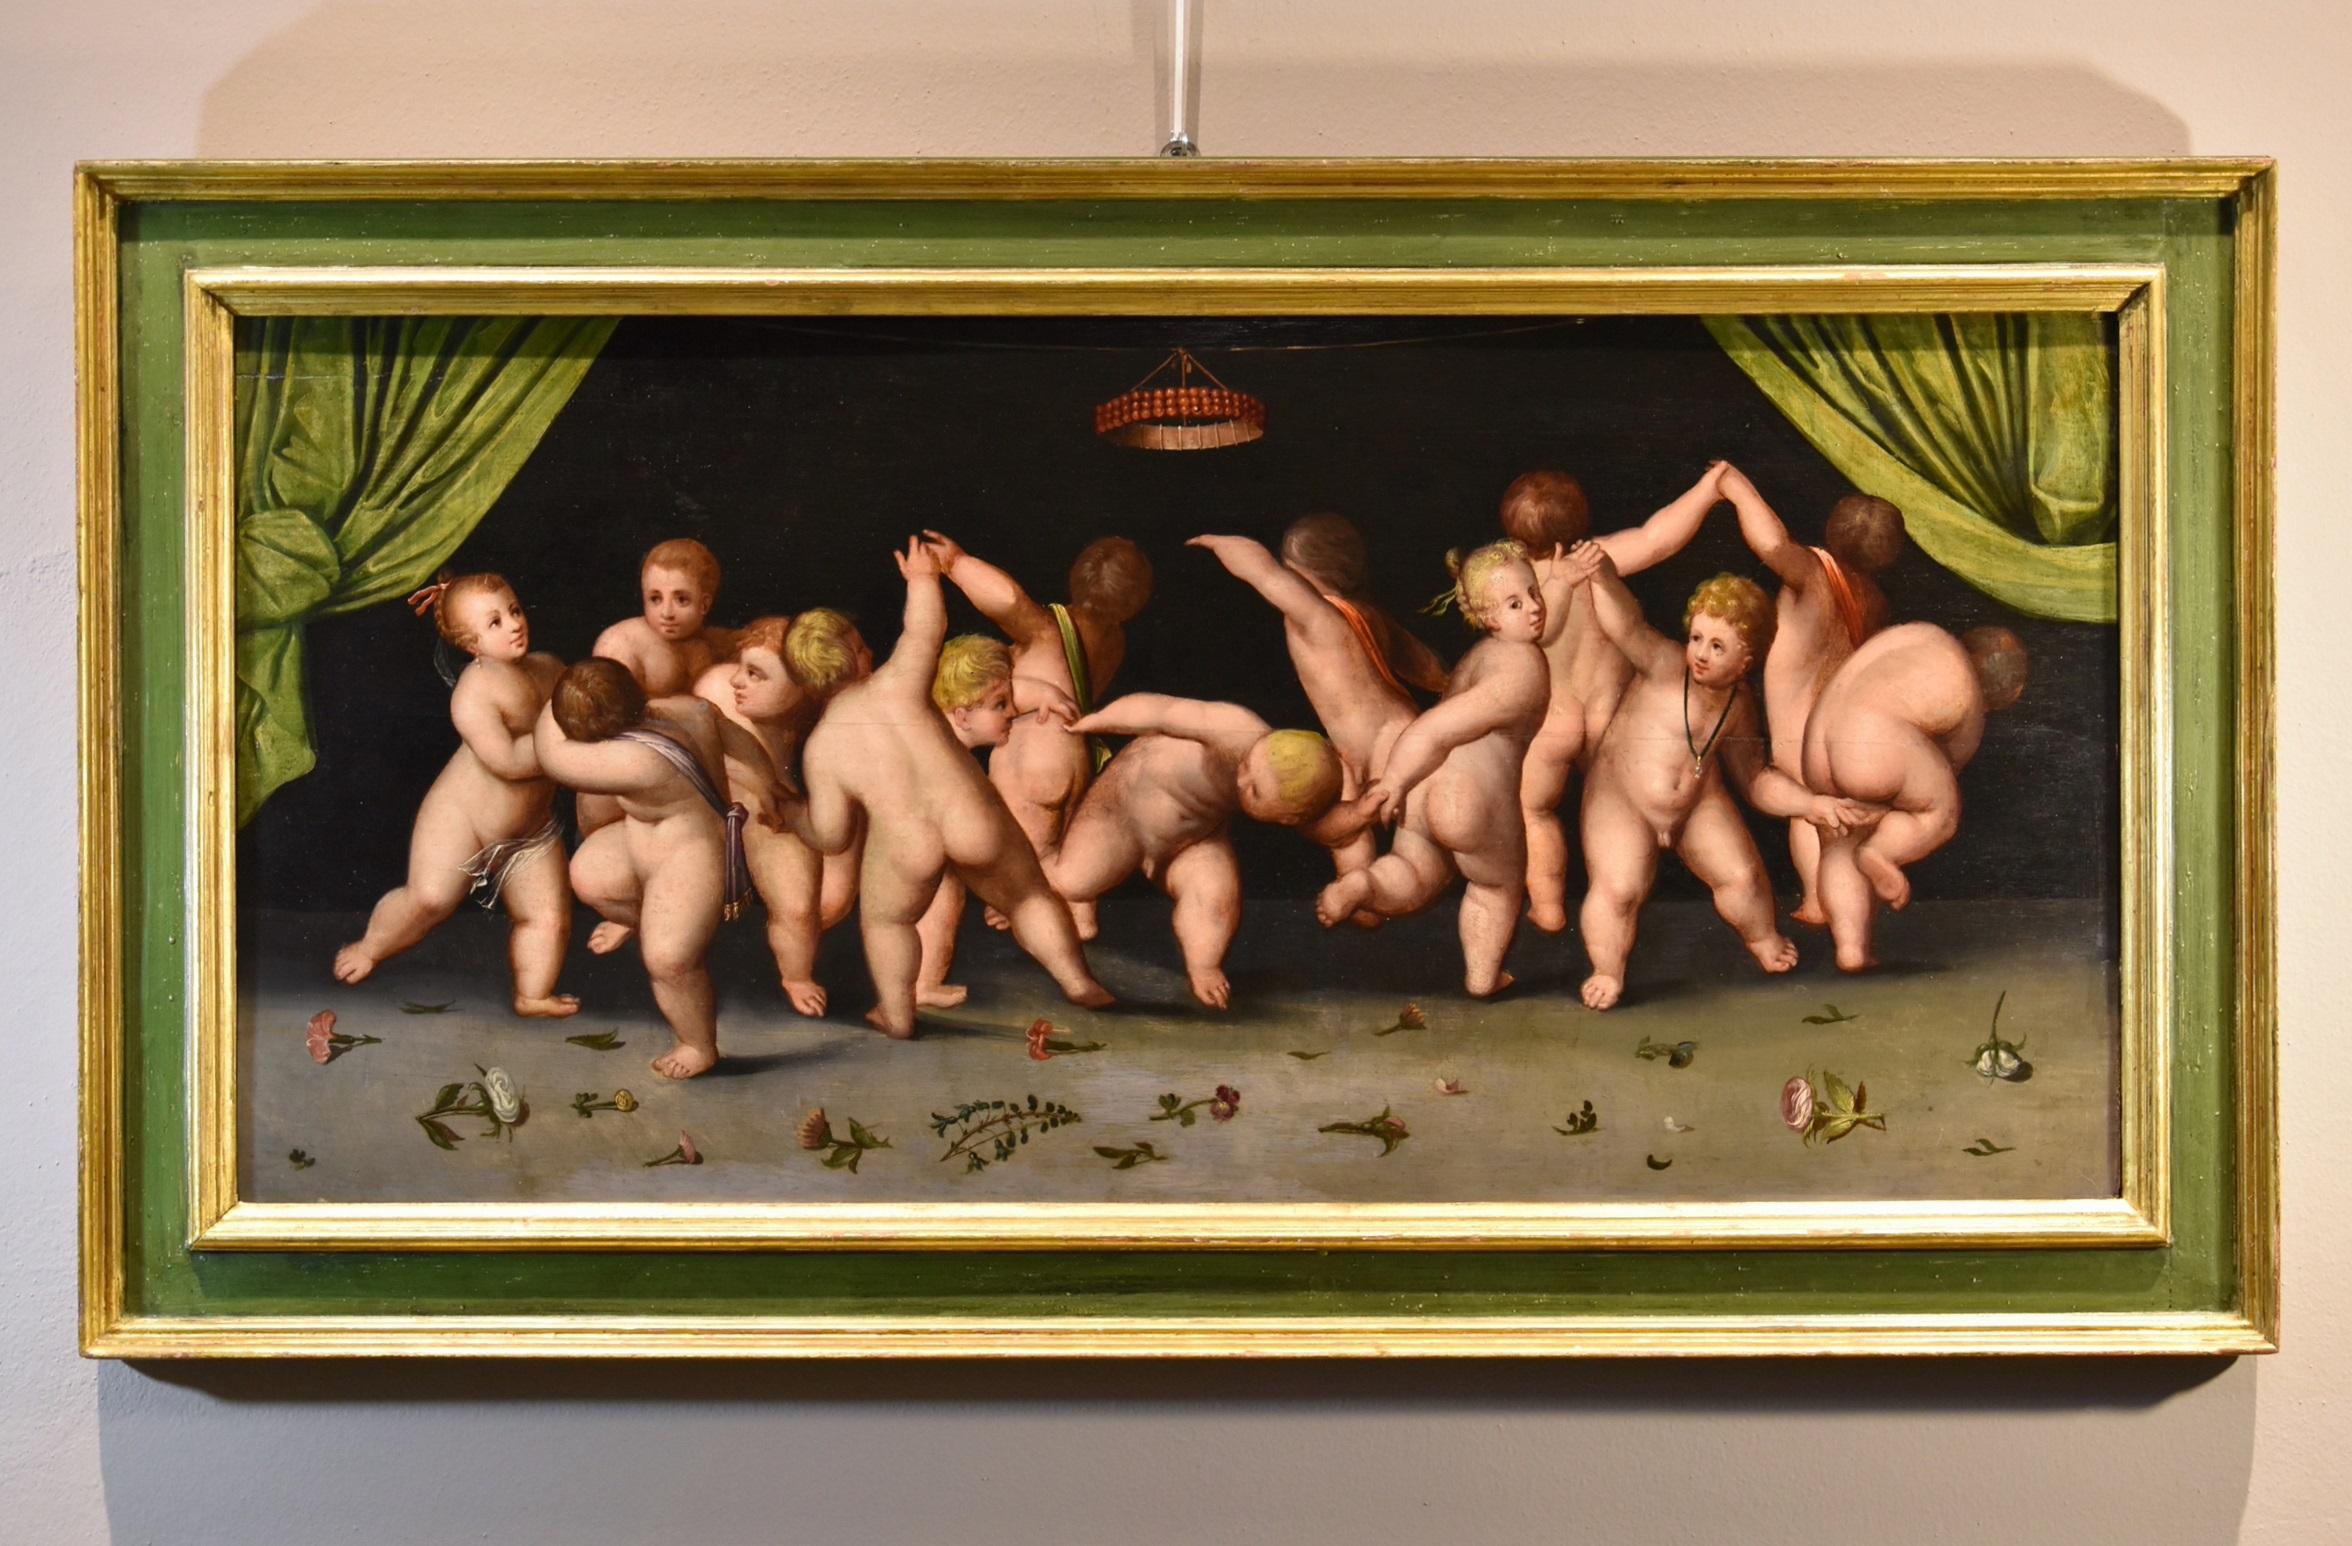 Tanz Putti Van Cleve Gemälde Öl auf Tafel 16. Jahrhundert Flämisch Altmeister Belgien (Alte Meister), Painting, von Cornelis Van Cleve (antwerp, 1520 - 1567) 